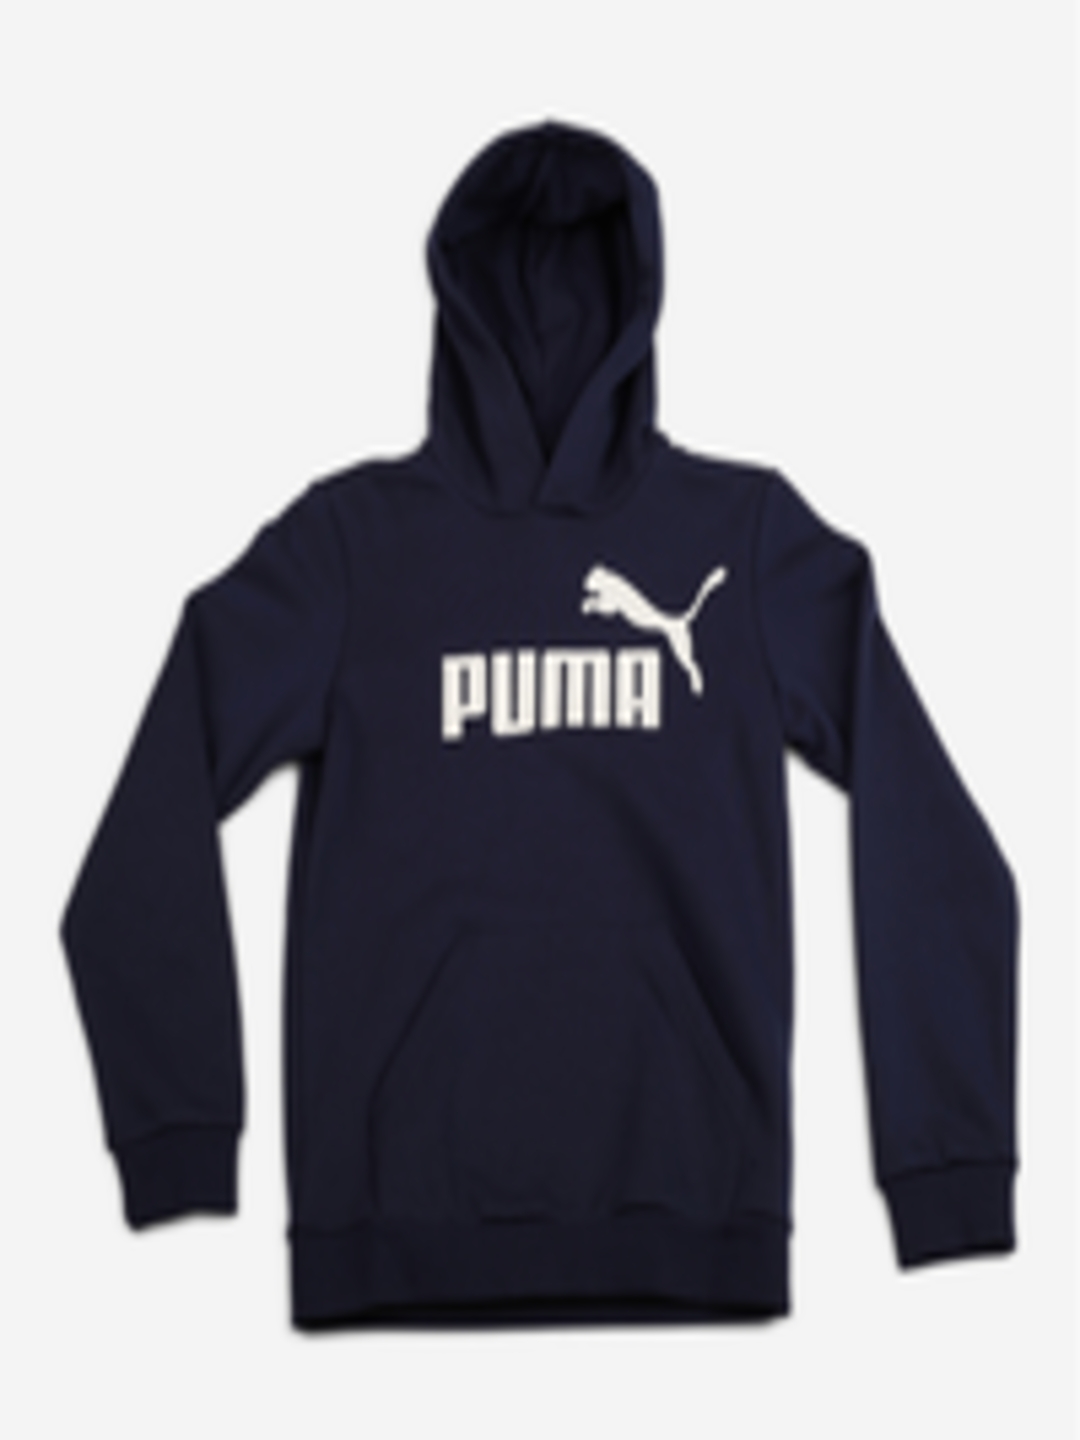 Buy Puma Boys Navy Blue & White ESS Logo Printed Hooded Sweatshirt ...